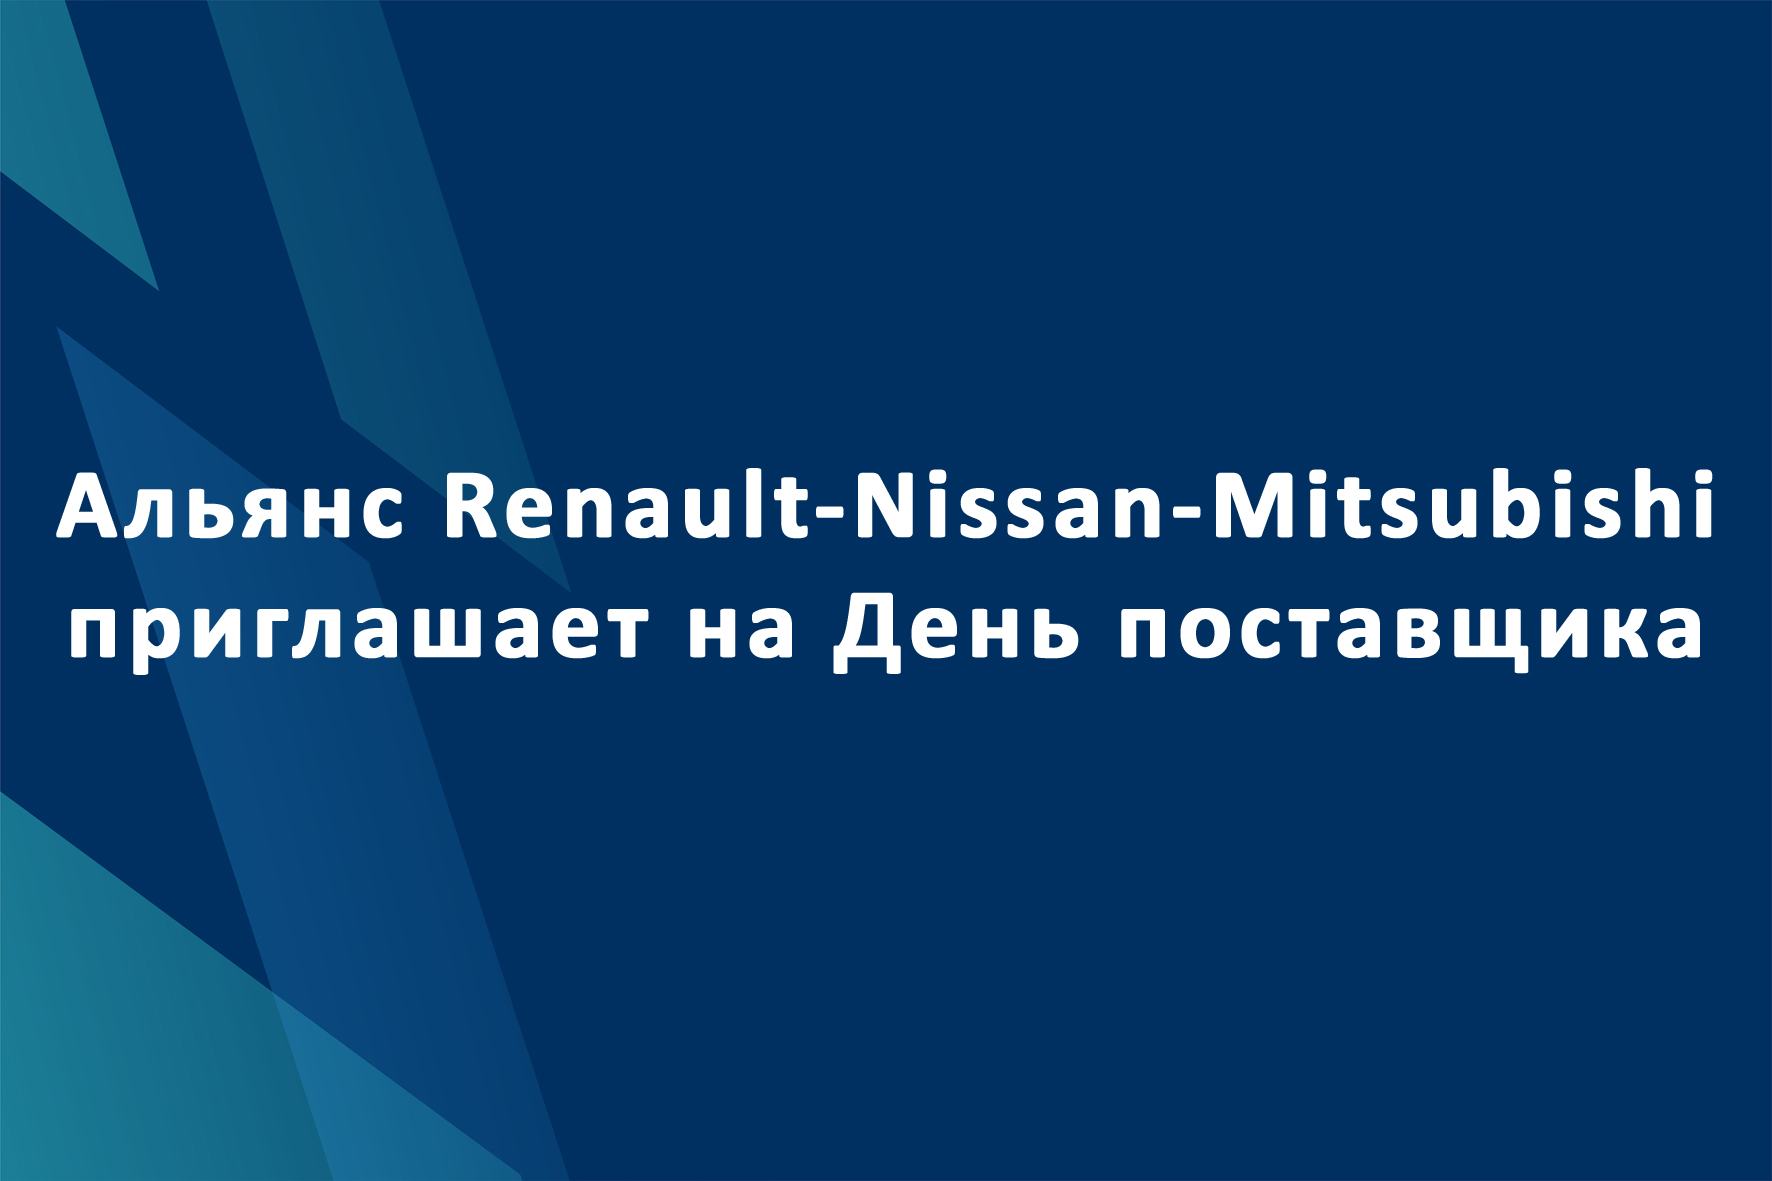 Альянс Renault-Nissan-Mitsubishi приглашает на День поставщика